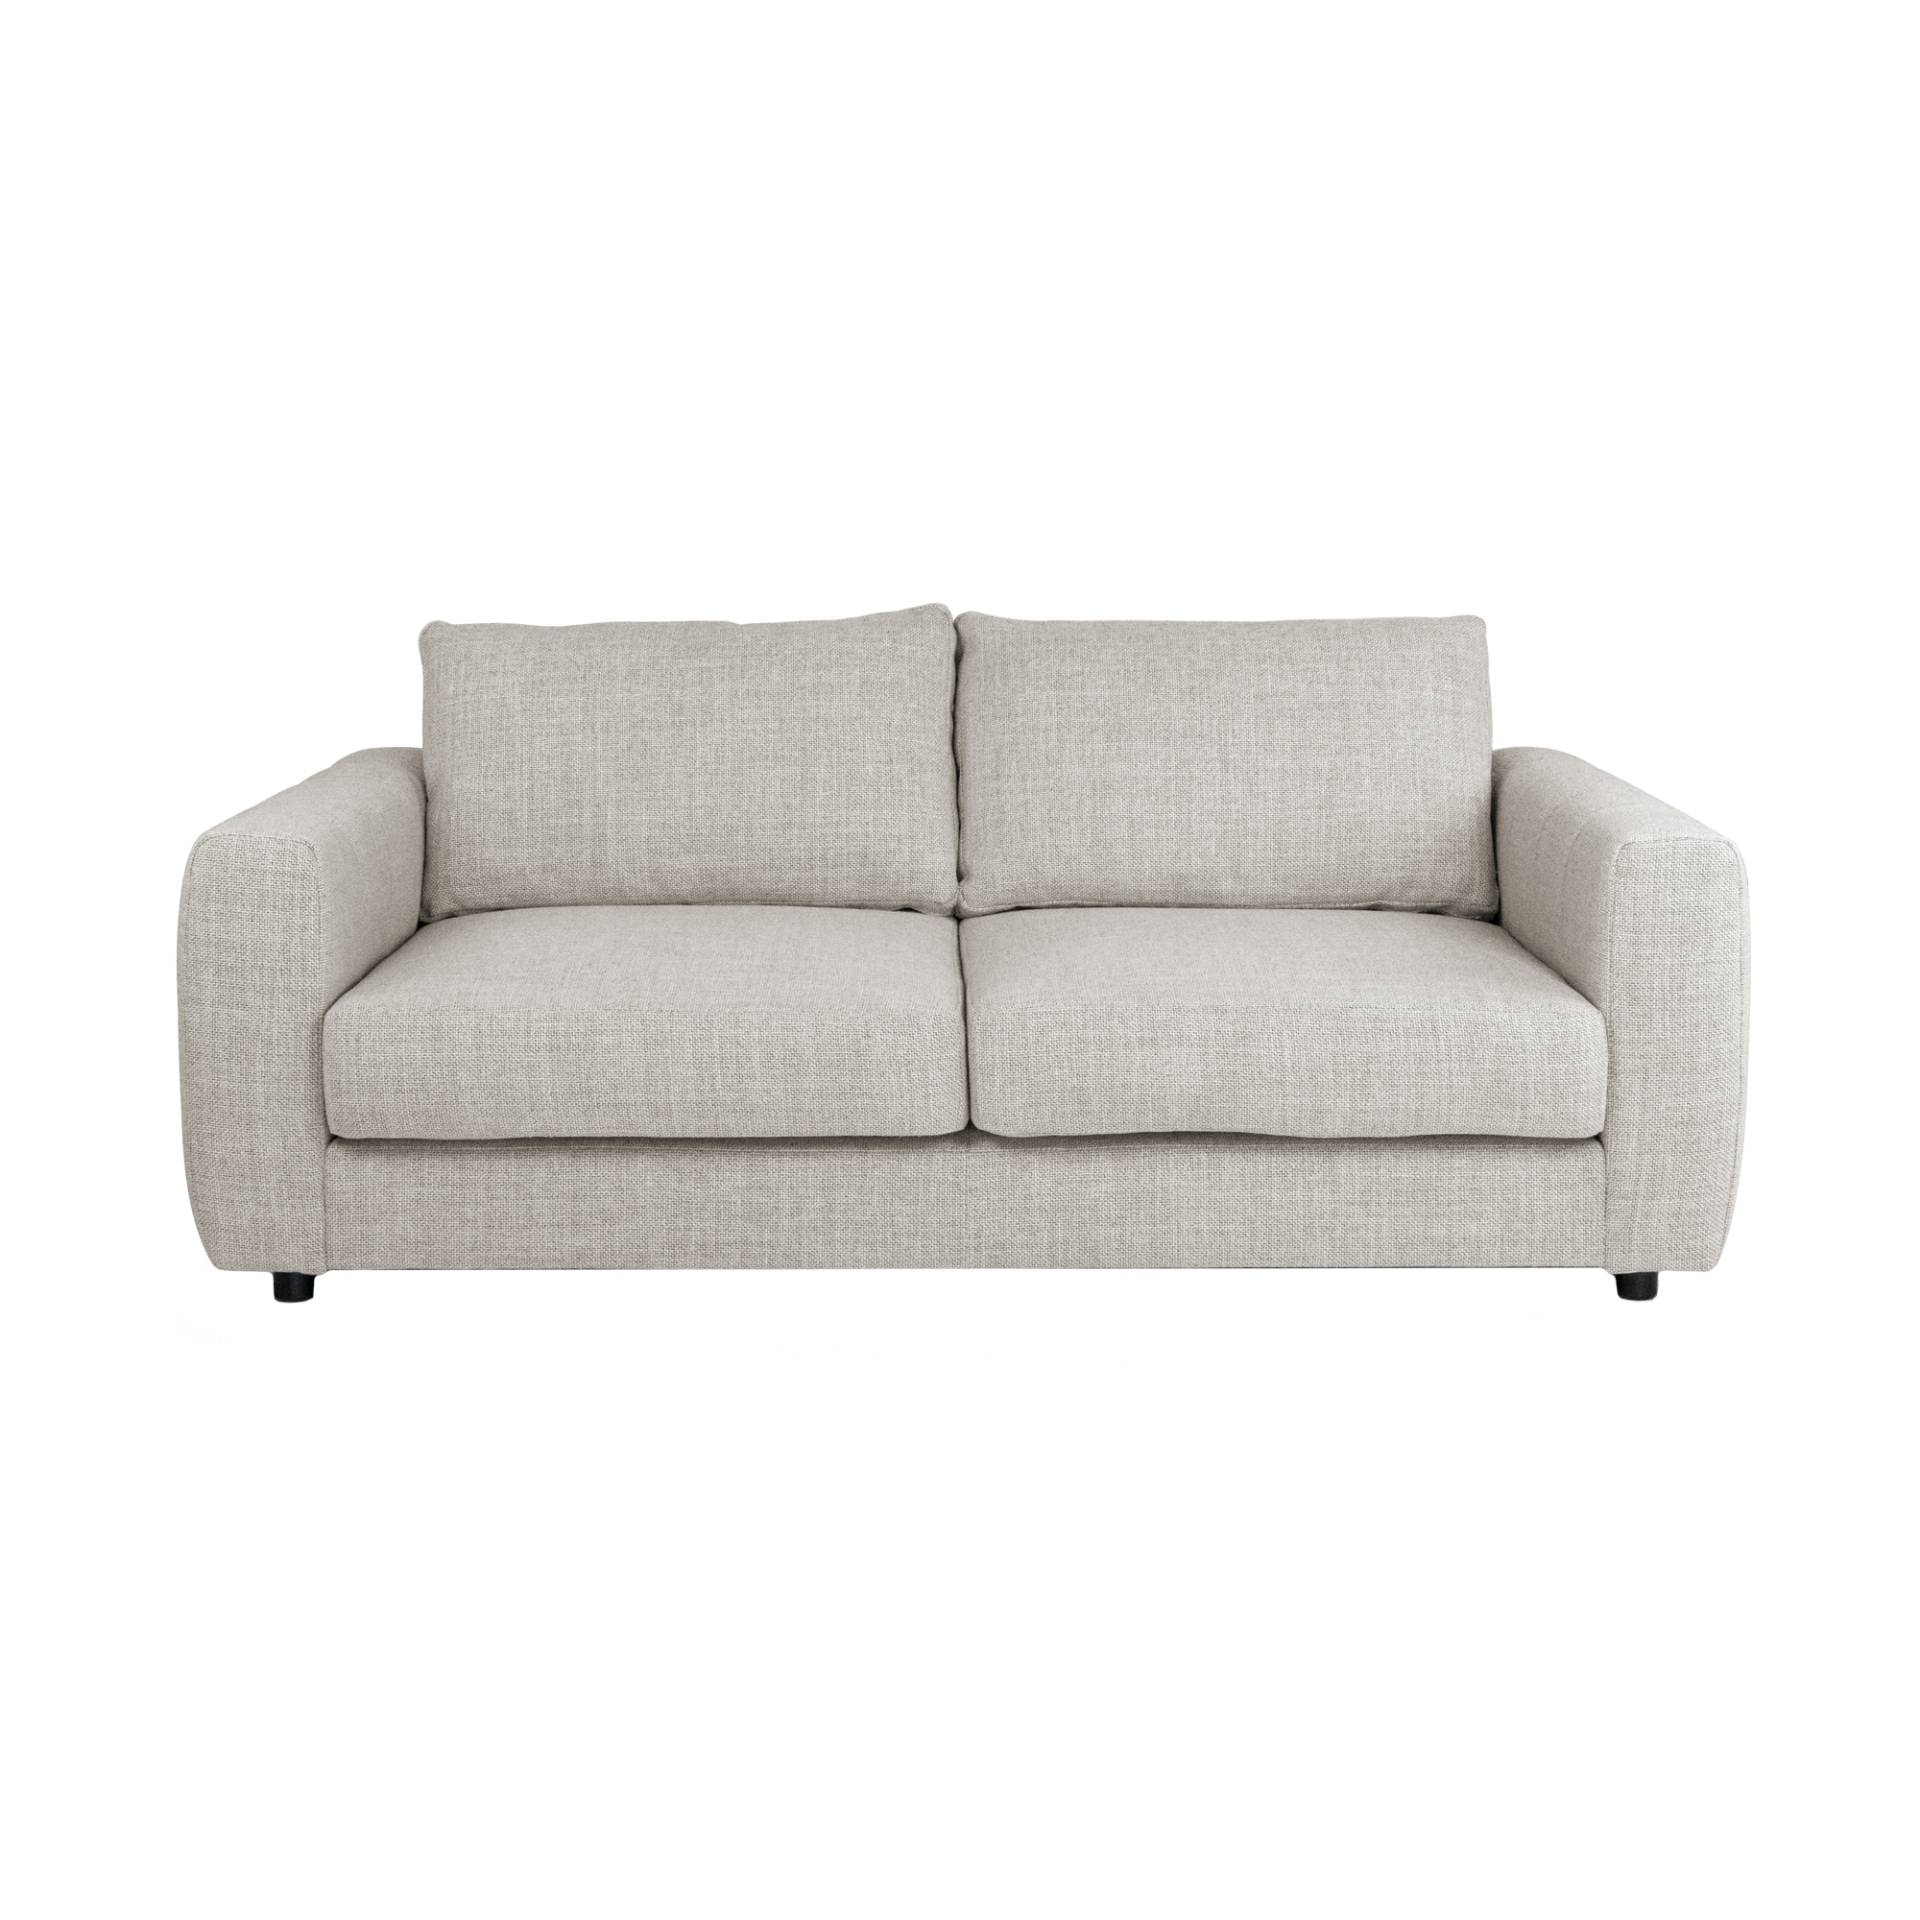 Nuuck - Bente 2,5-Sitzer Sofa - beige/Melina Simply 1244/LxBxH 182x100x79cm/mit Kunststoffgleitern und Kissen von Nuuck